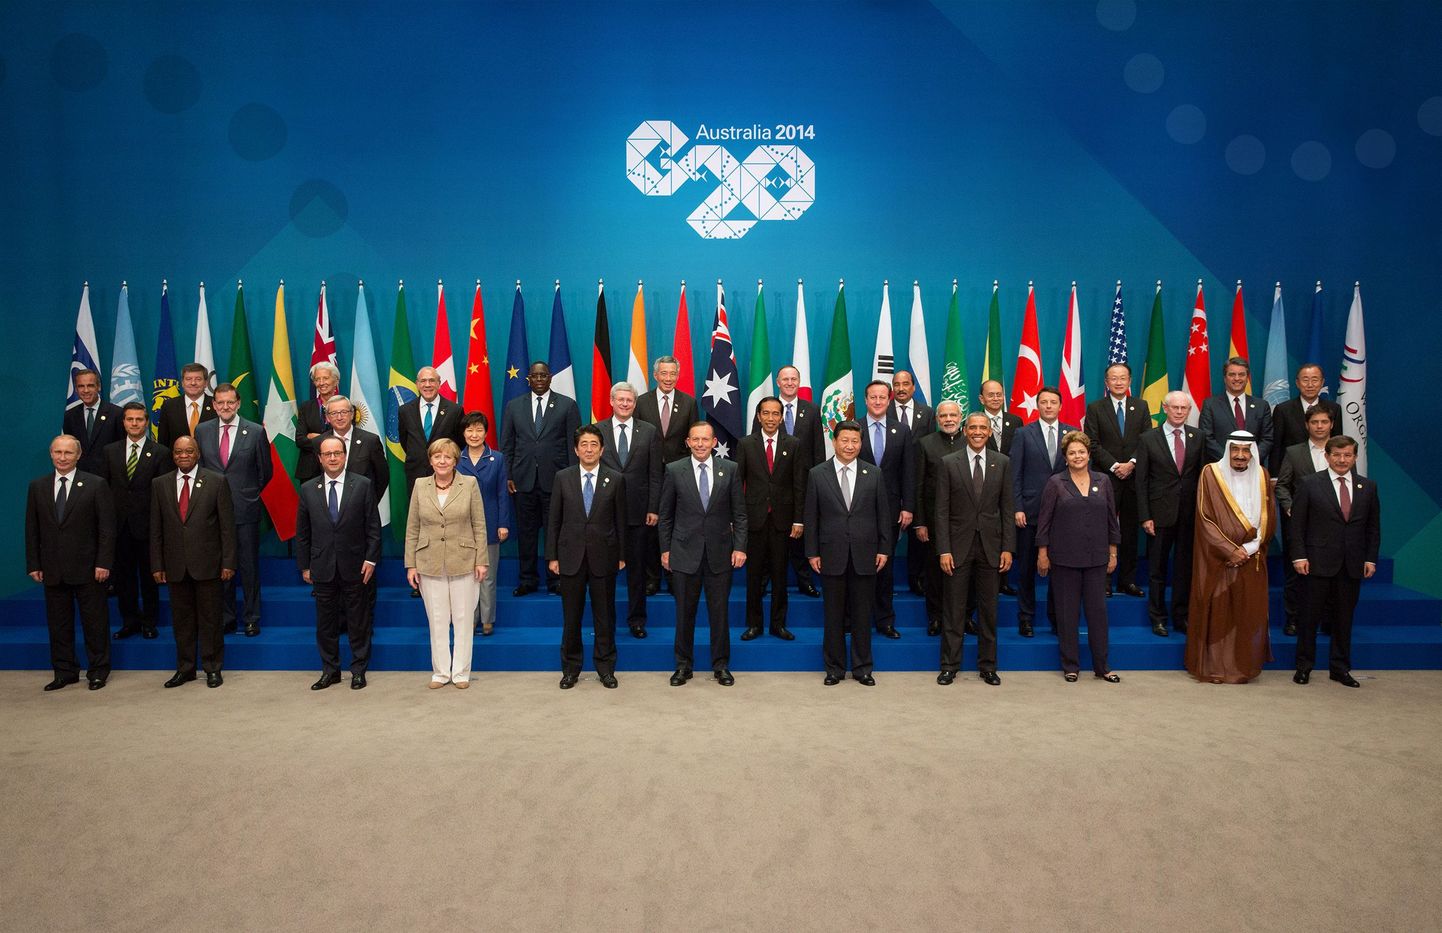 Riigipeade ja valitsusjuhtide ühispilt G20 tippkohtumiselt 15. novembril 2014 Brisbane'is.